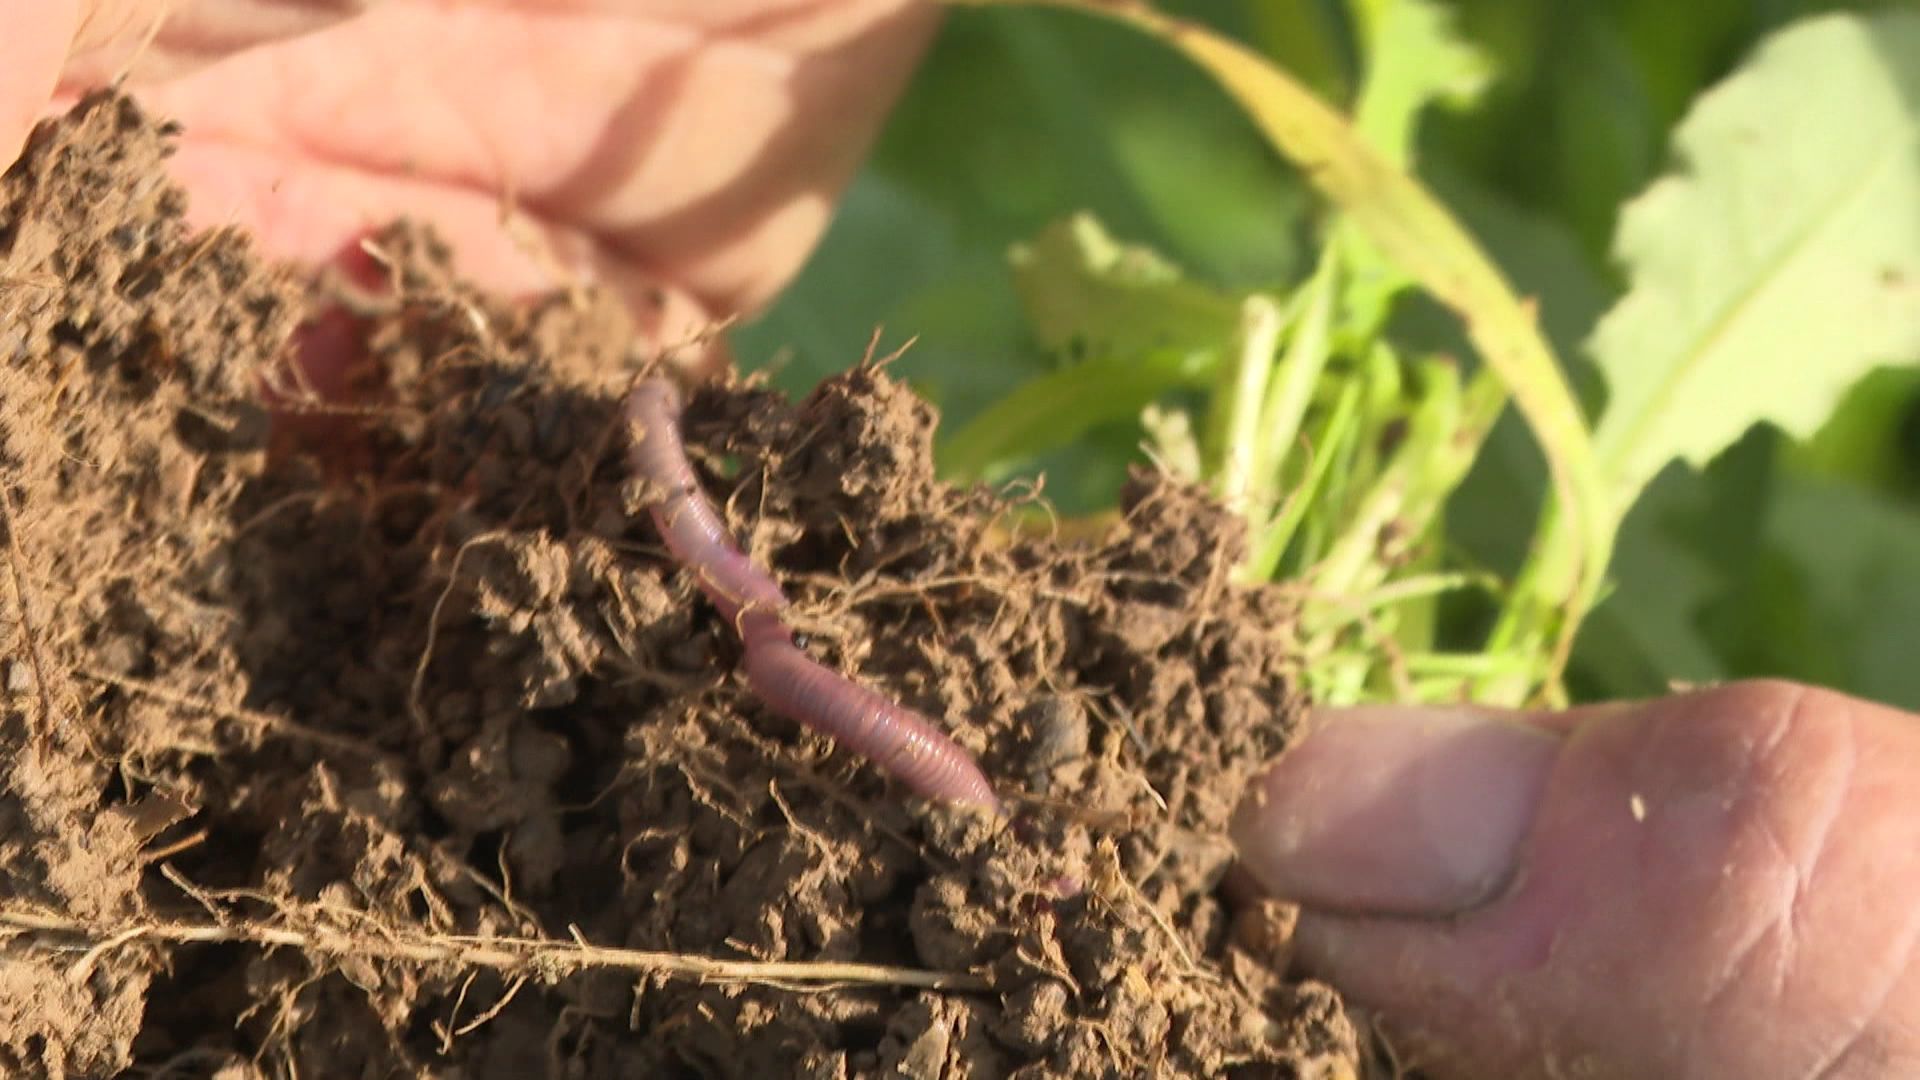 Et au milieu des racines, un petit être bien utile à l’agriculteur : le ver de terre.